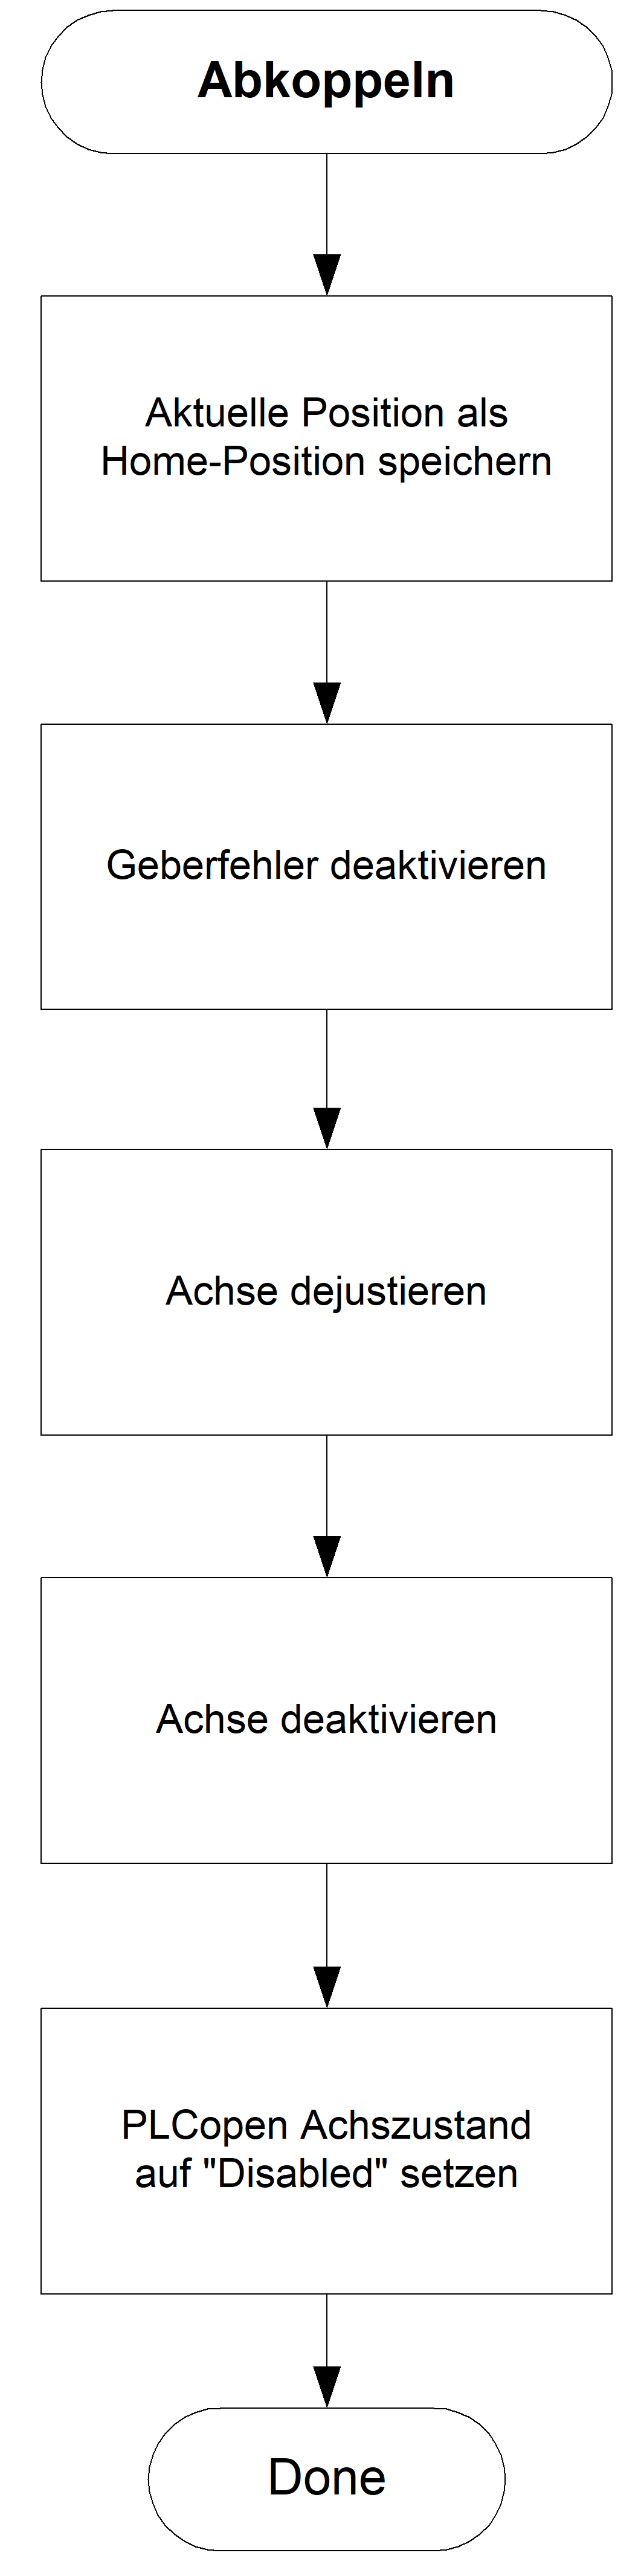 Ablaufdiagramm- Abkoppeln einer Achse